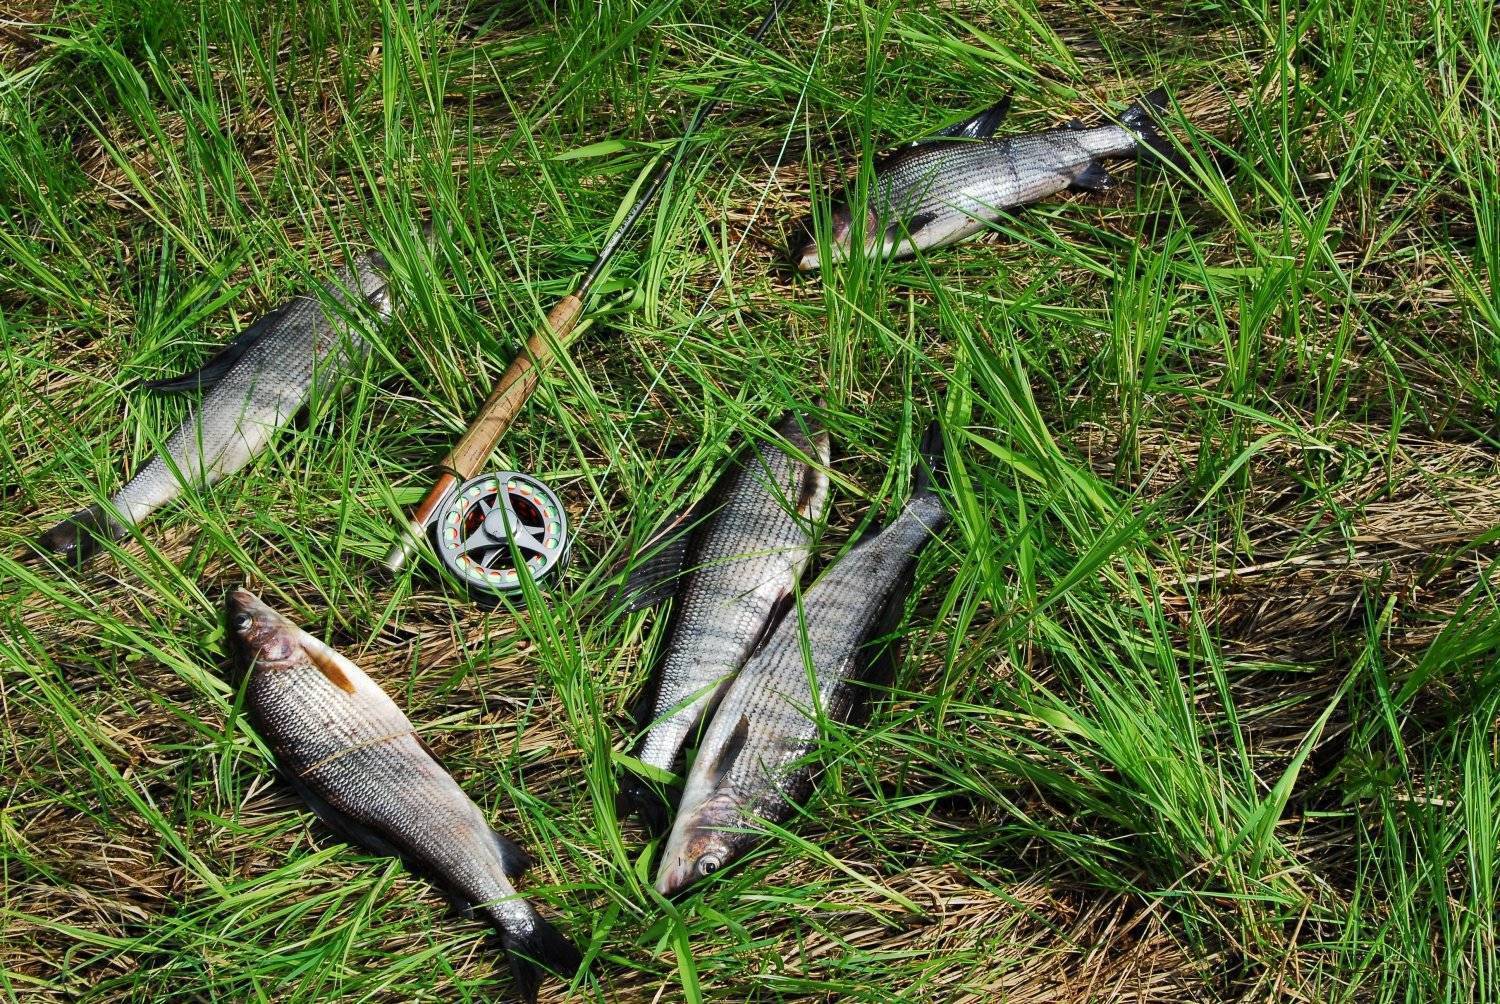 Места для рыбалки в архангельске и архангельской области - рыбные места на карте, где ловить рыбу